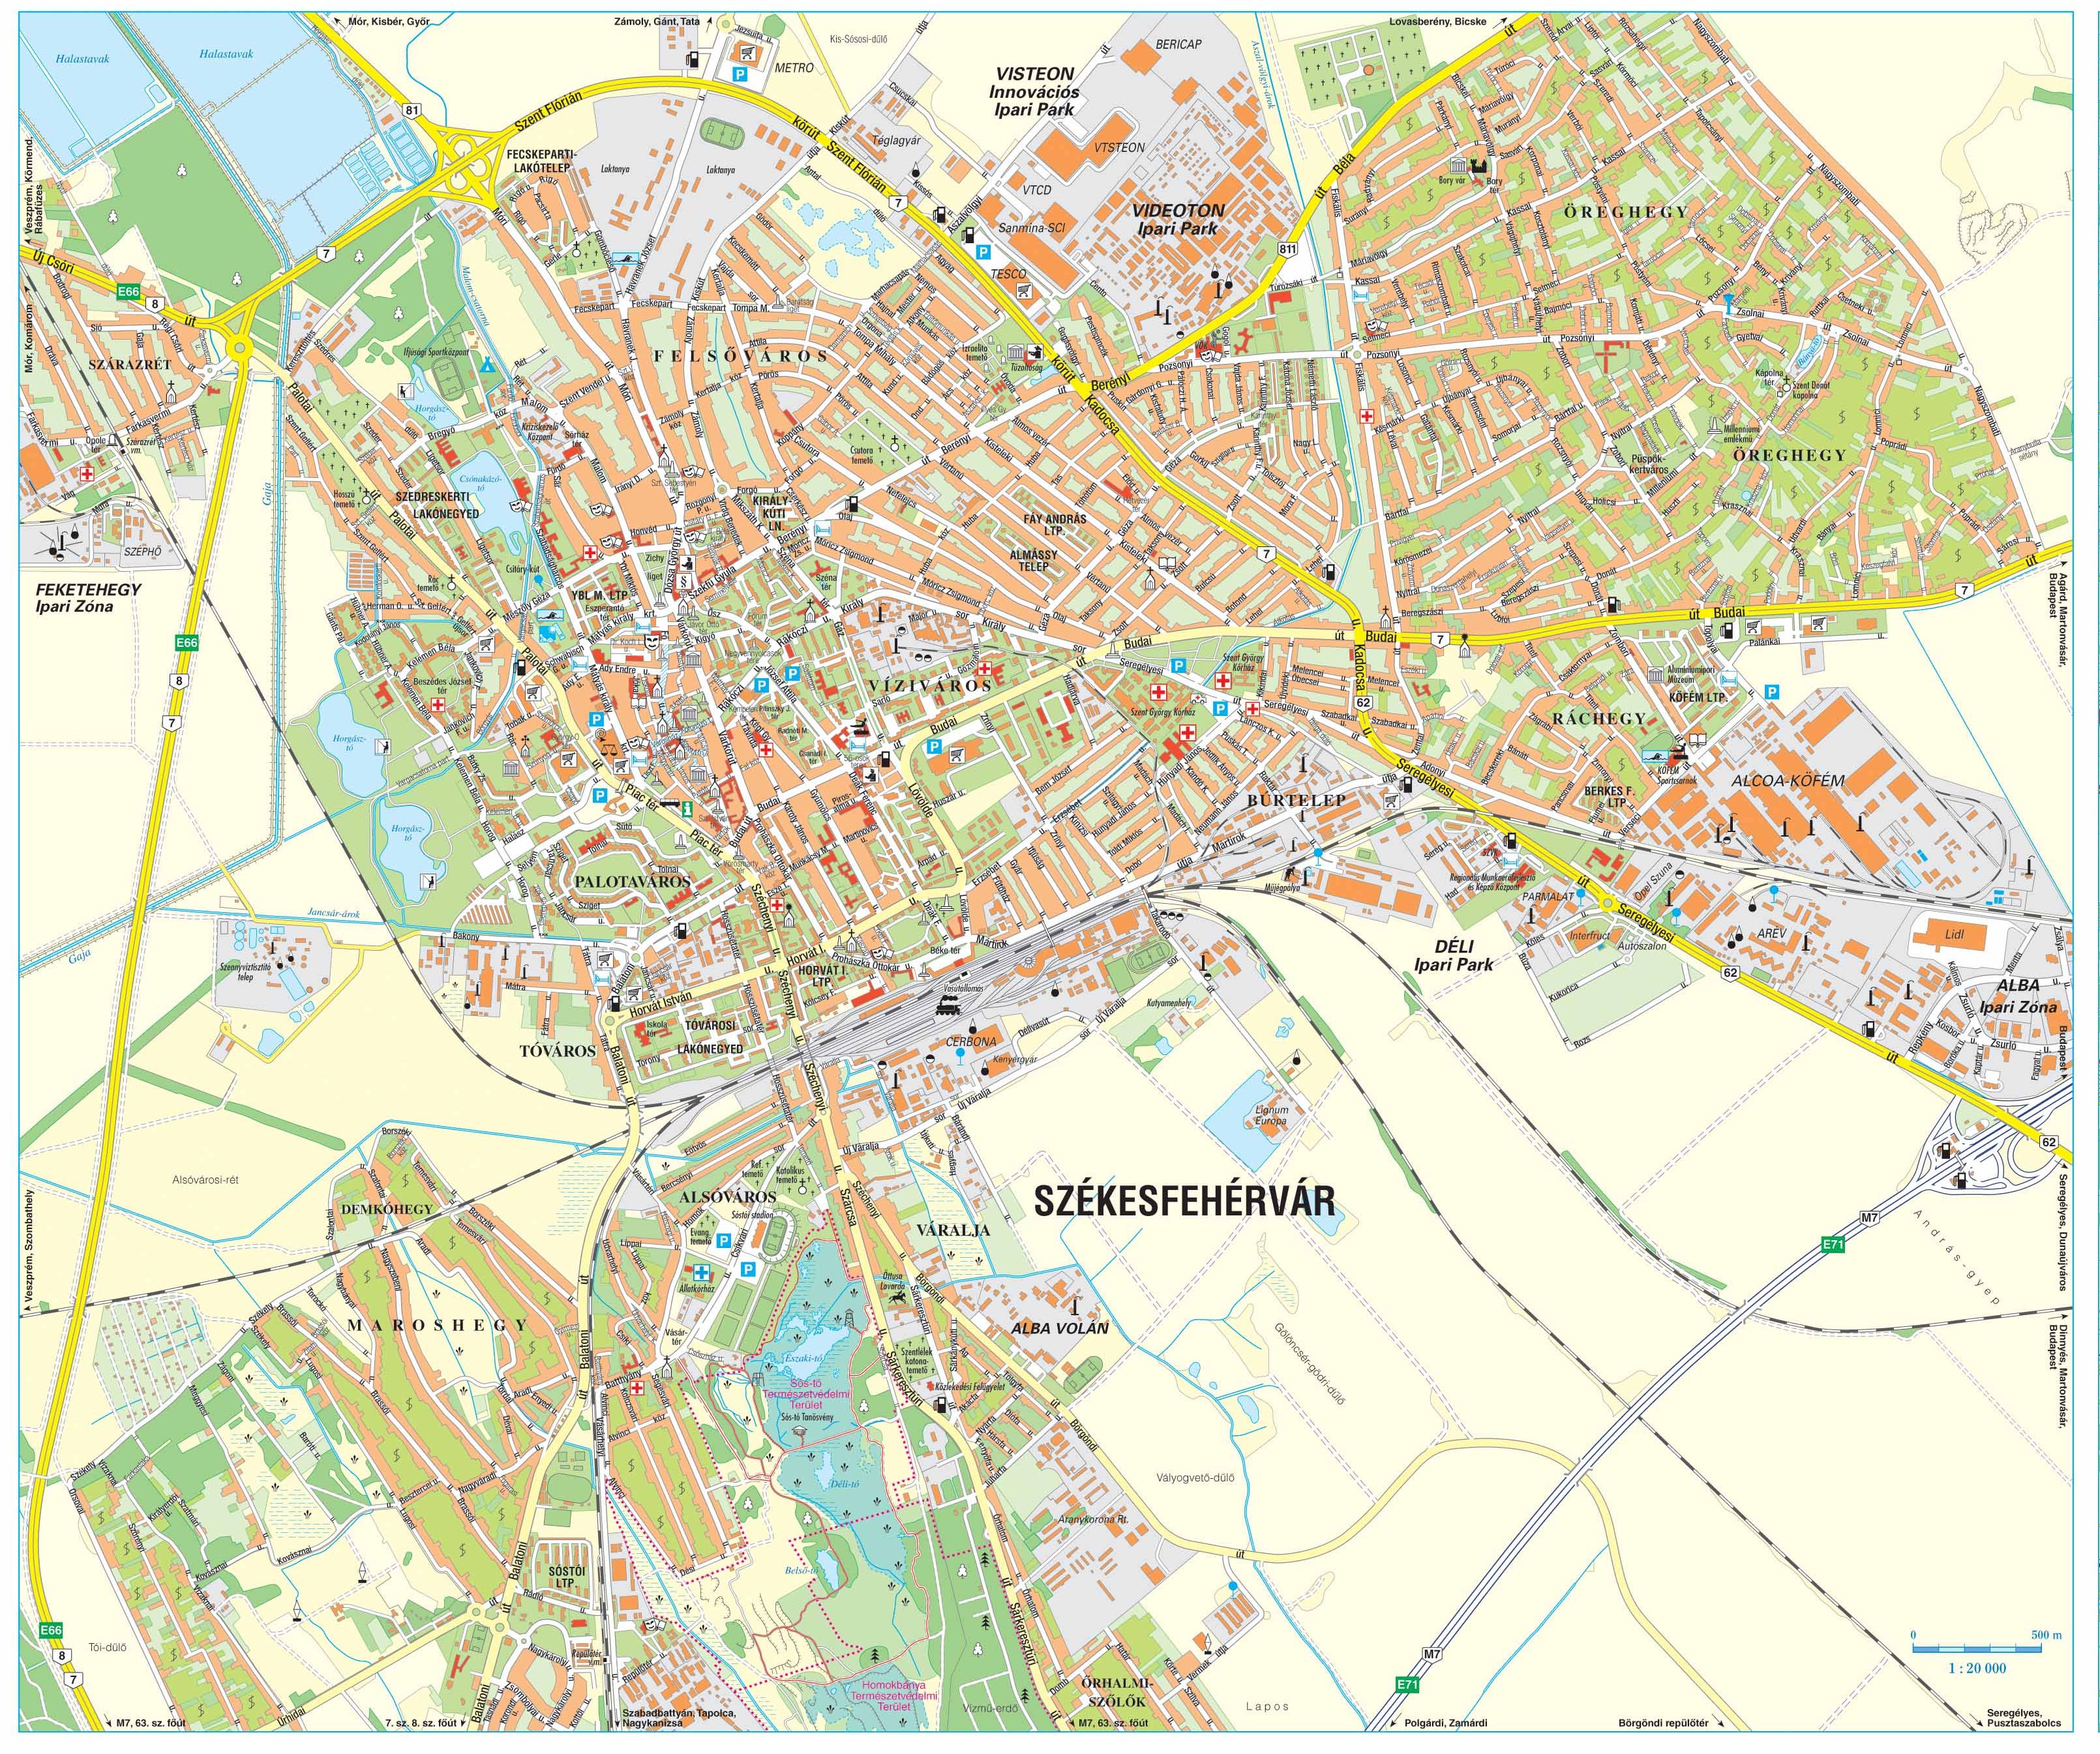 térkép székesfehérvár fehéren feketén térkép székesfehérvár